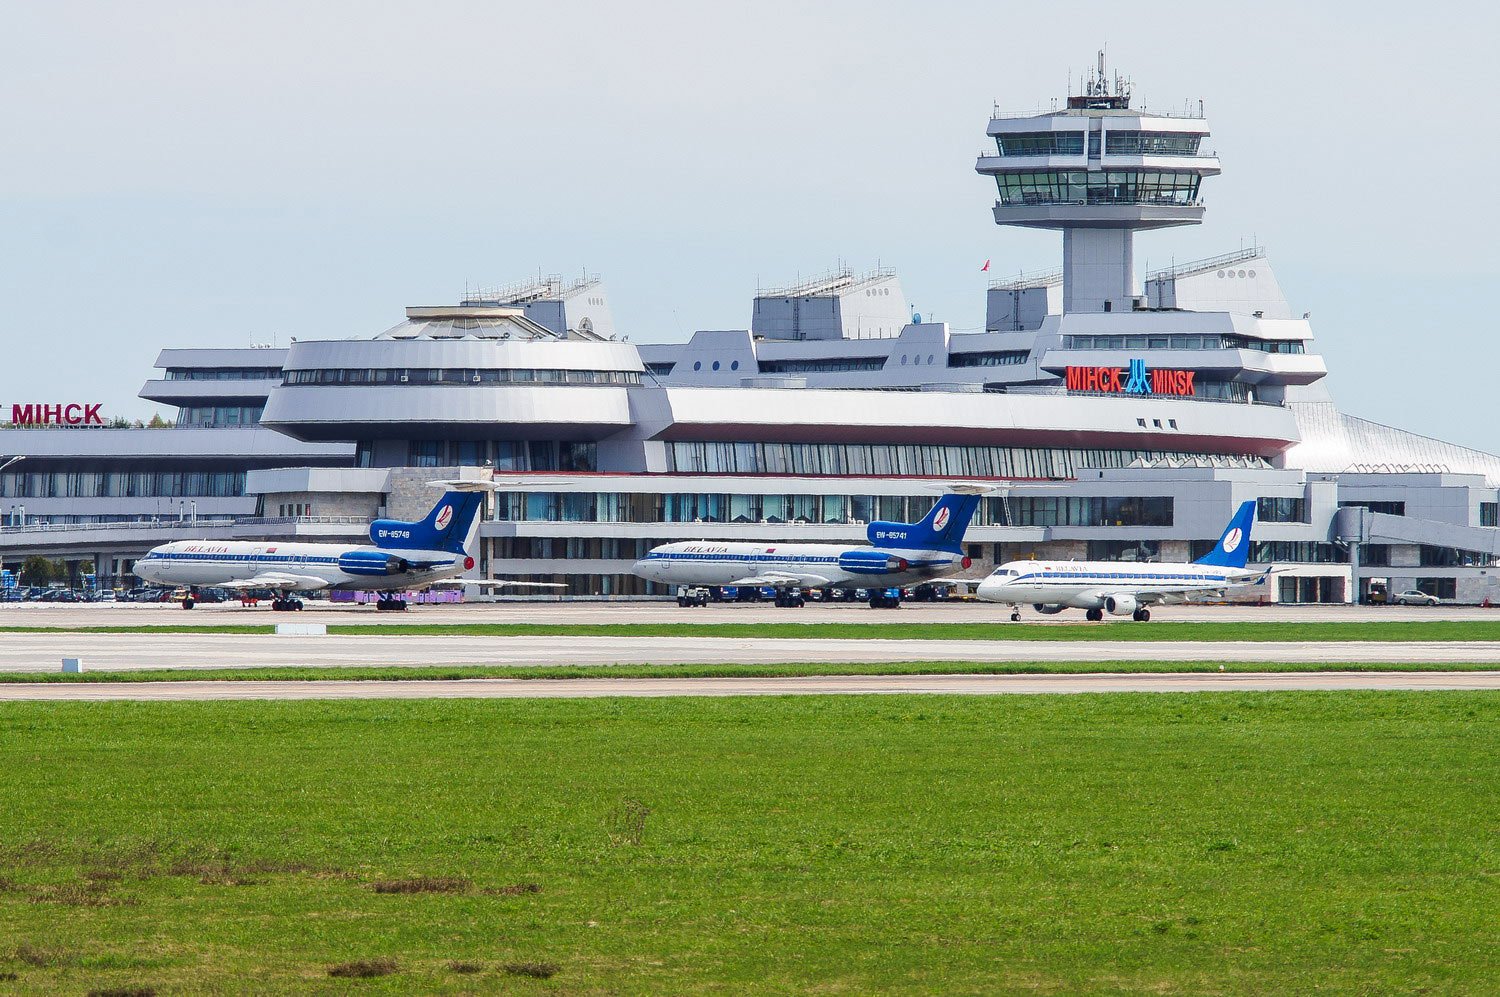 Аэропорт минск: расписание рейсов, табло, как добраться